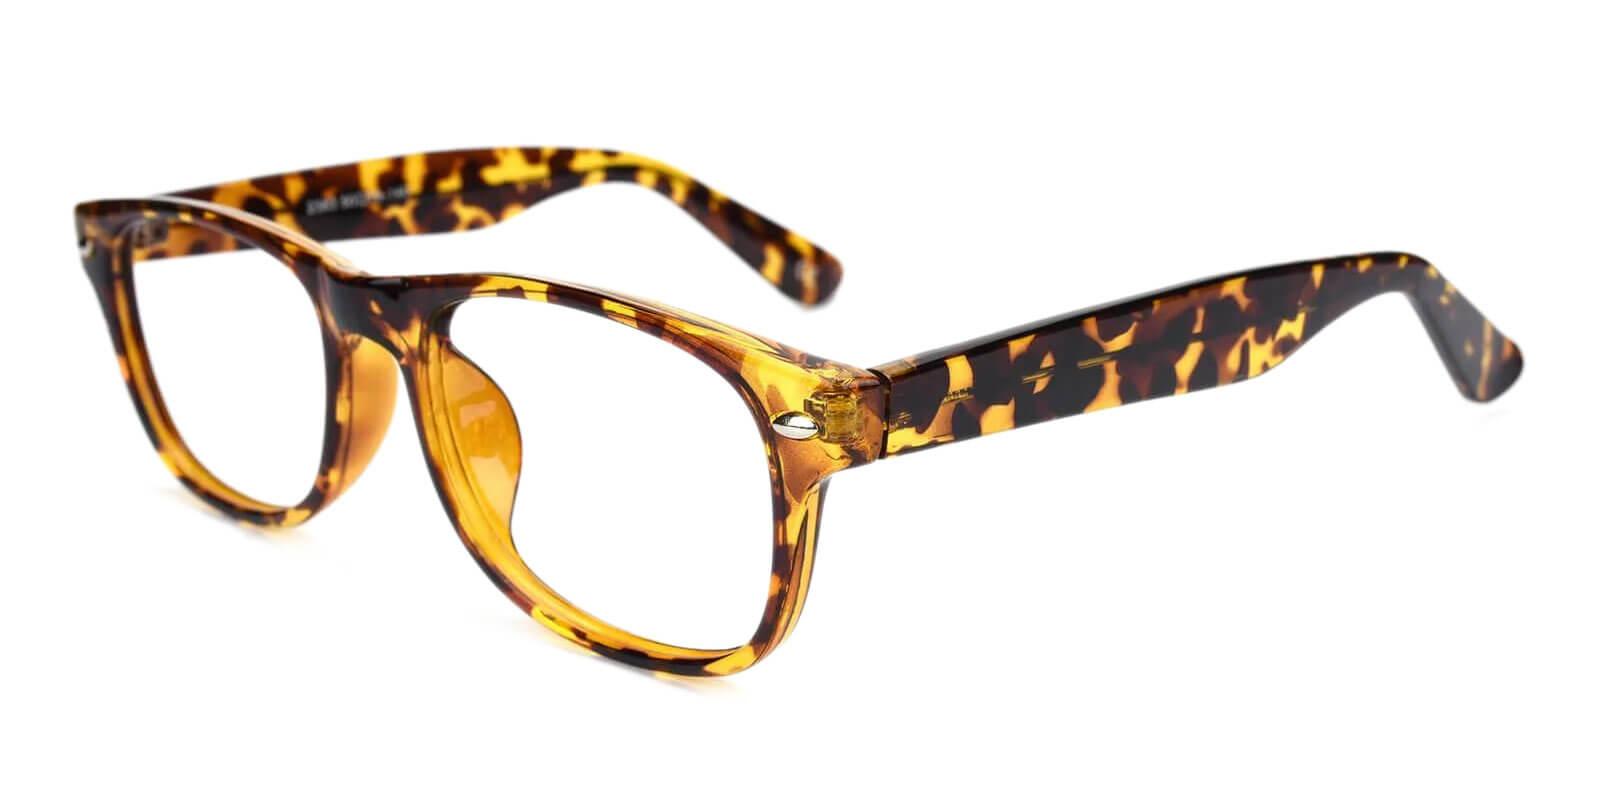 Mode Tortoise Plastic Eyeglasses , UniversalBridgeFit Frames from ABBE Glasses